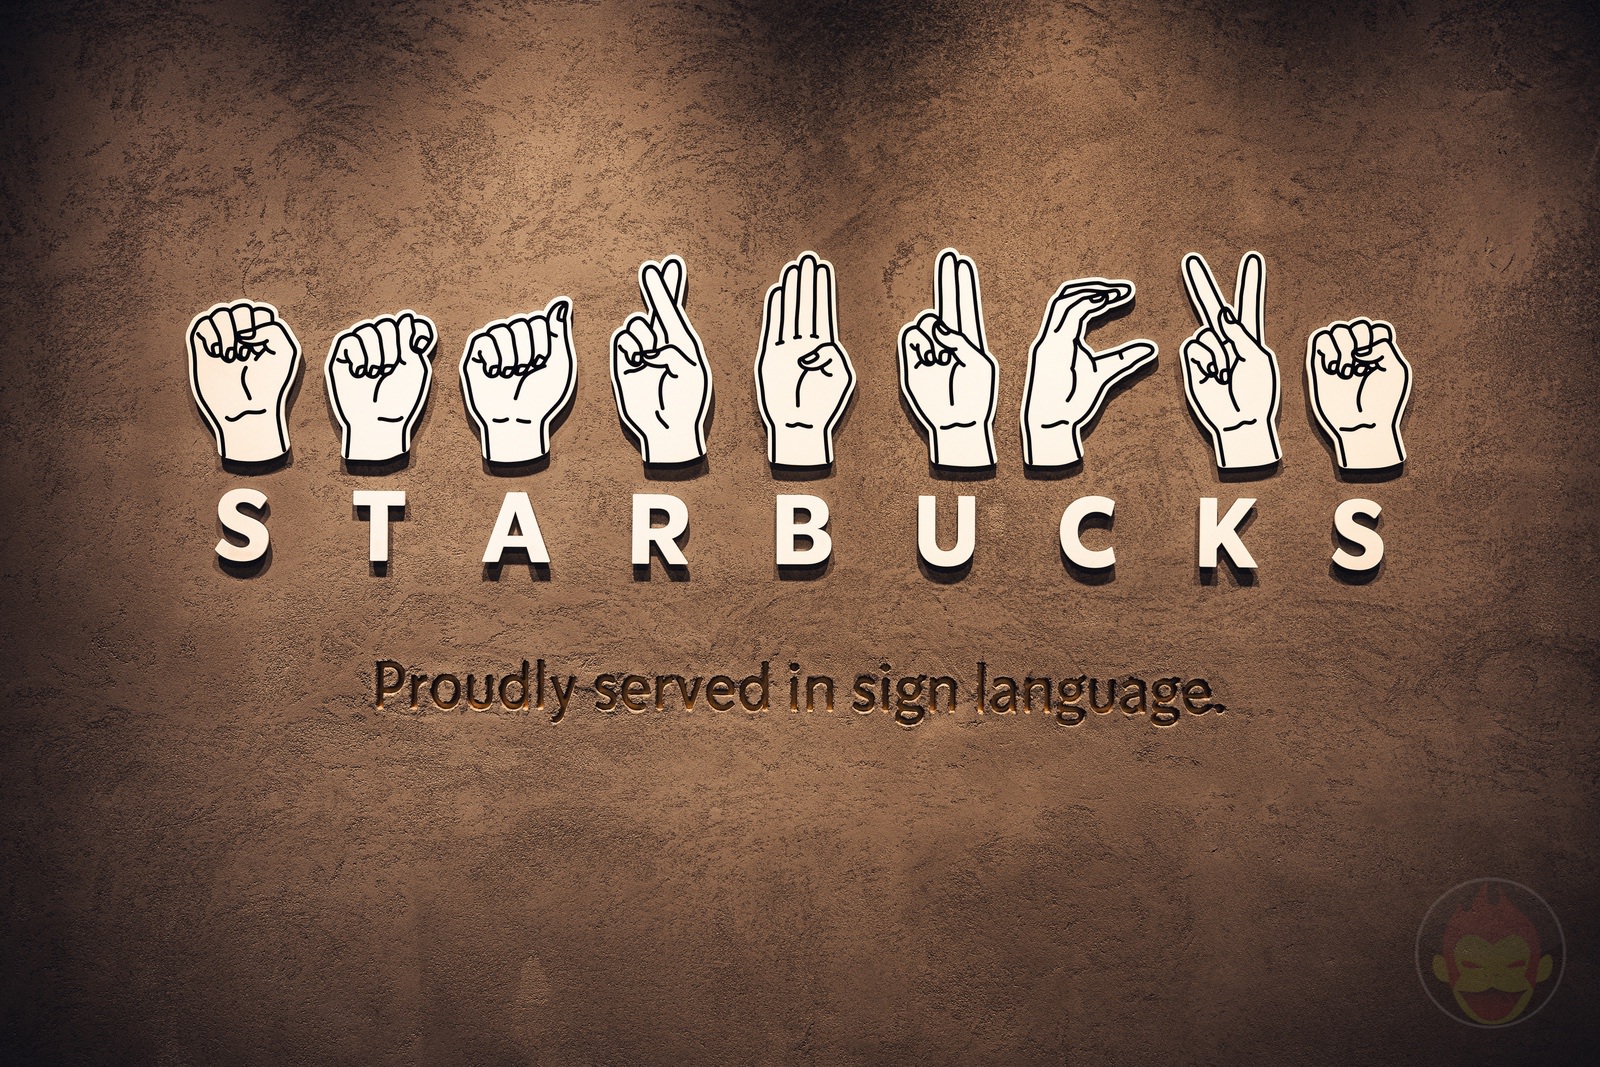 Sign Language Starbucks in japan 01